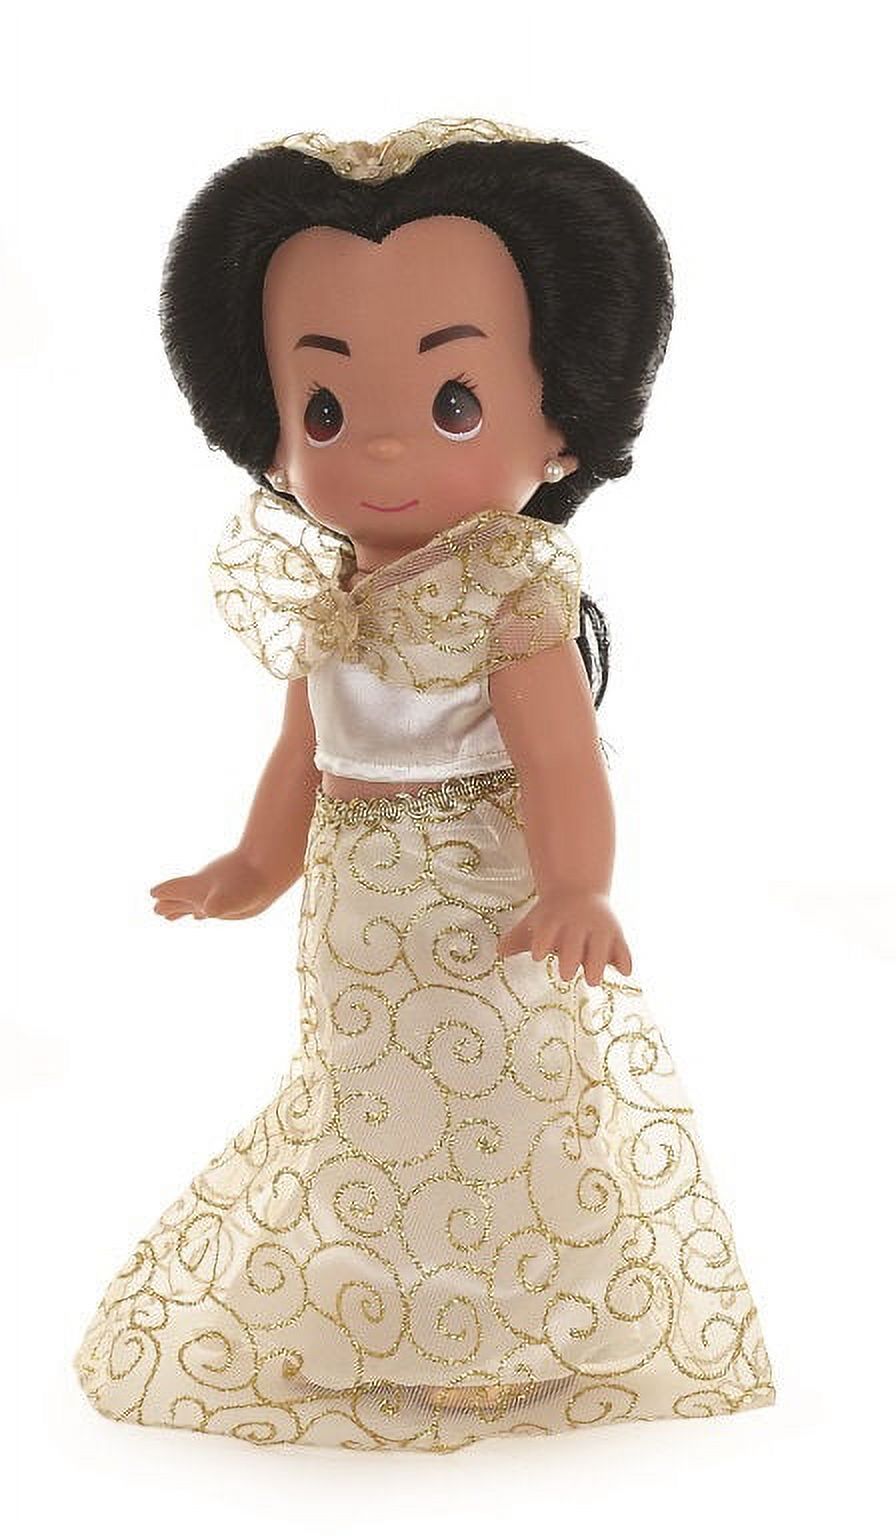 Precious Moments 2015 Disney D23 Expo Jasmine Doll #5895 - image 1 of 1